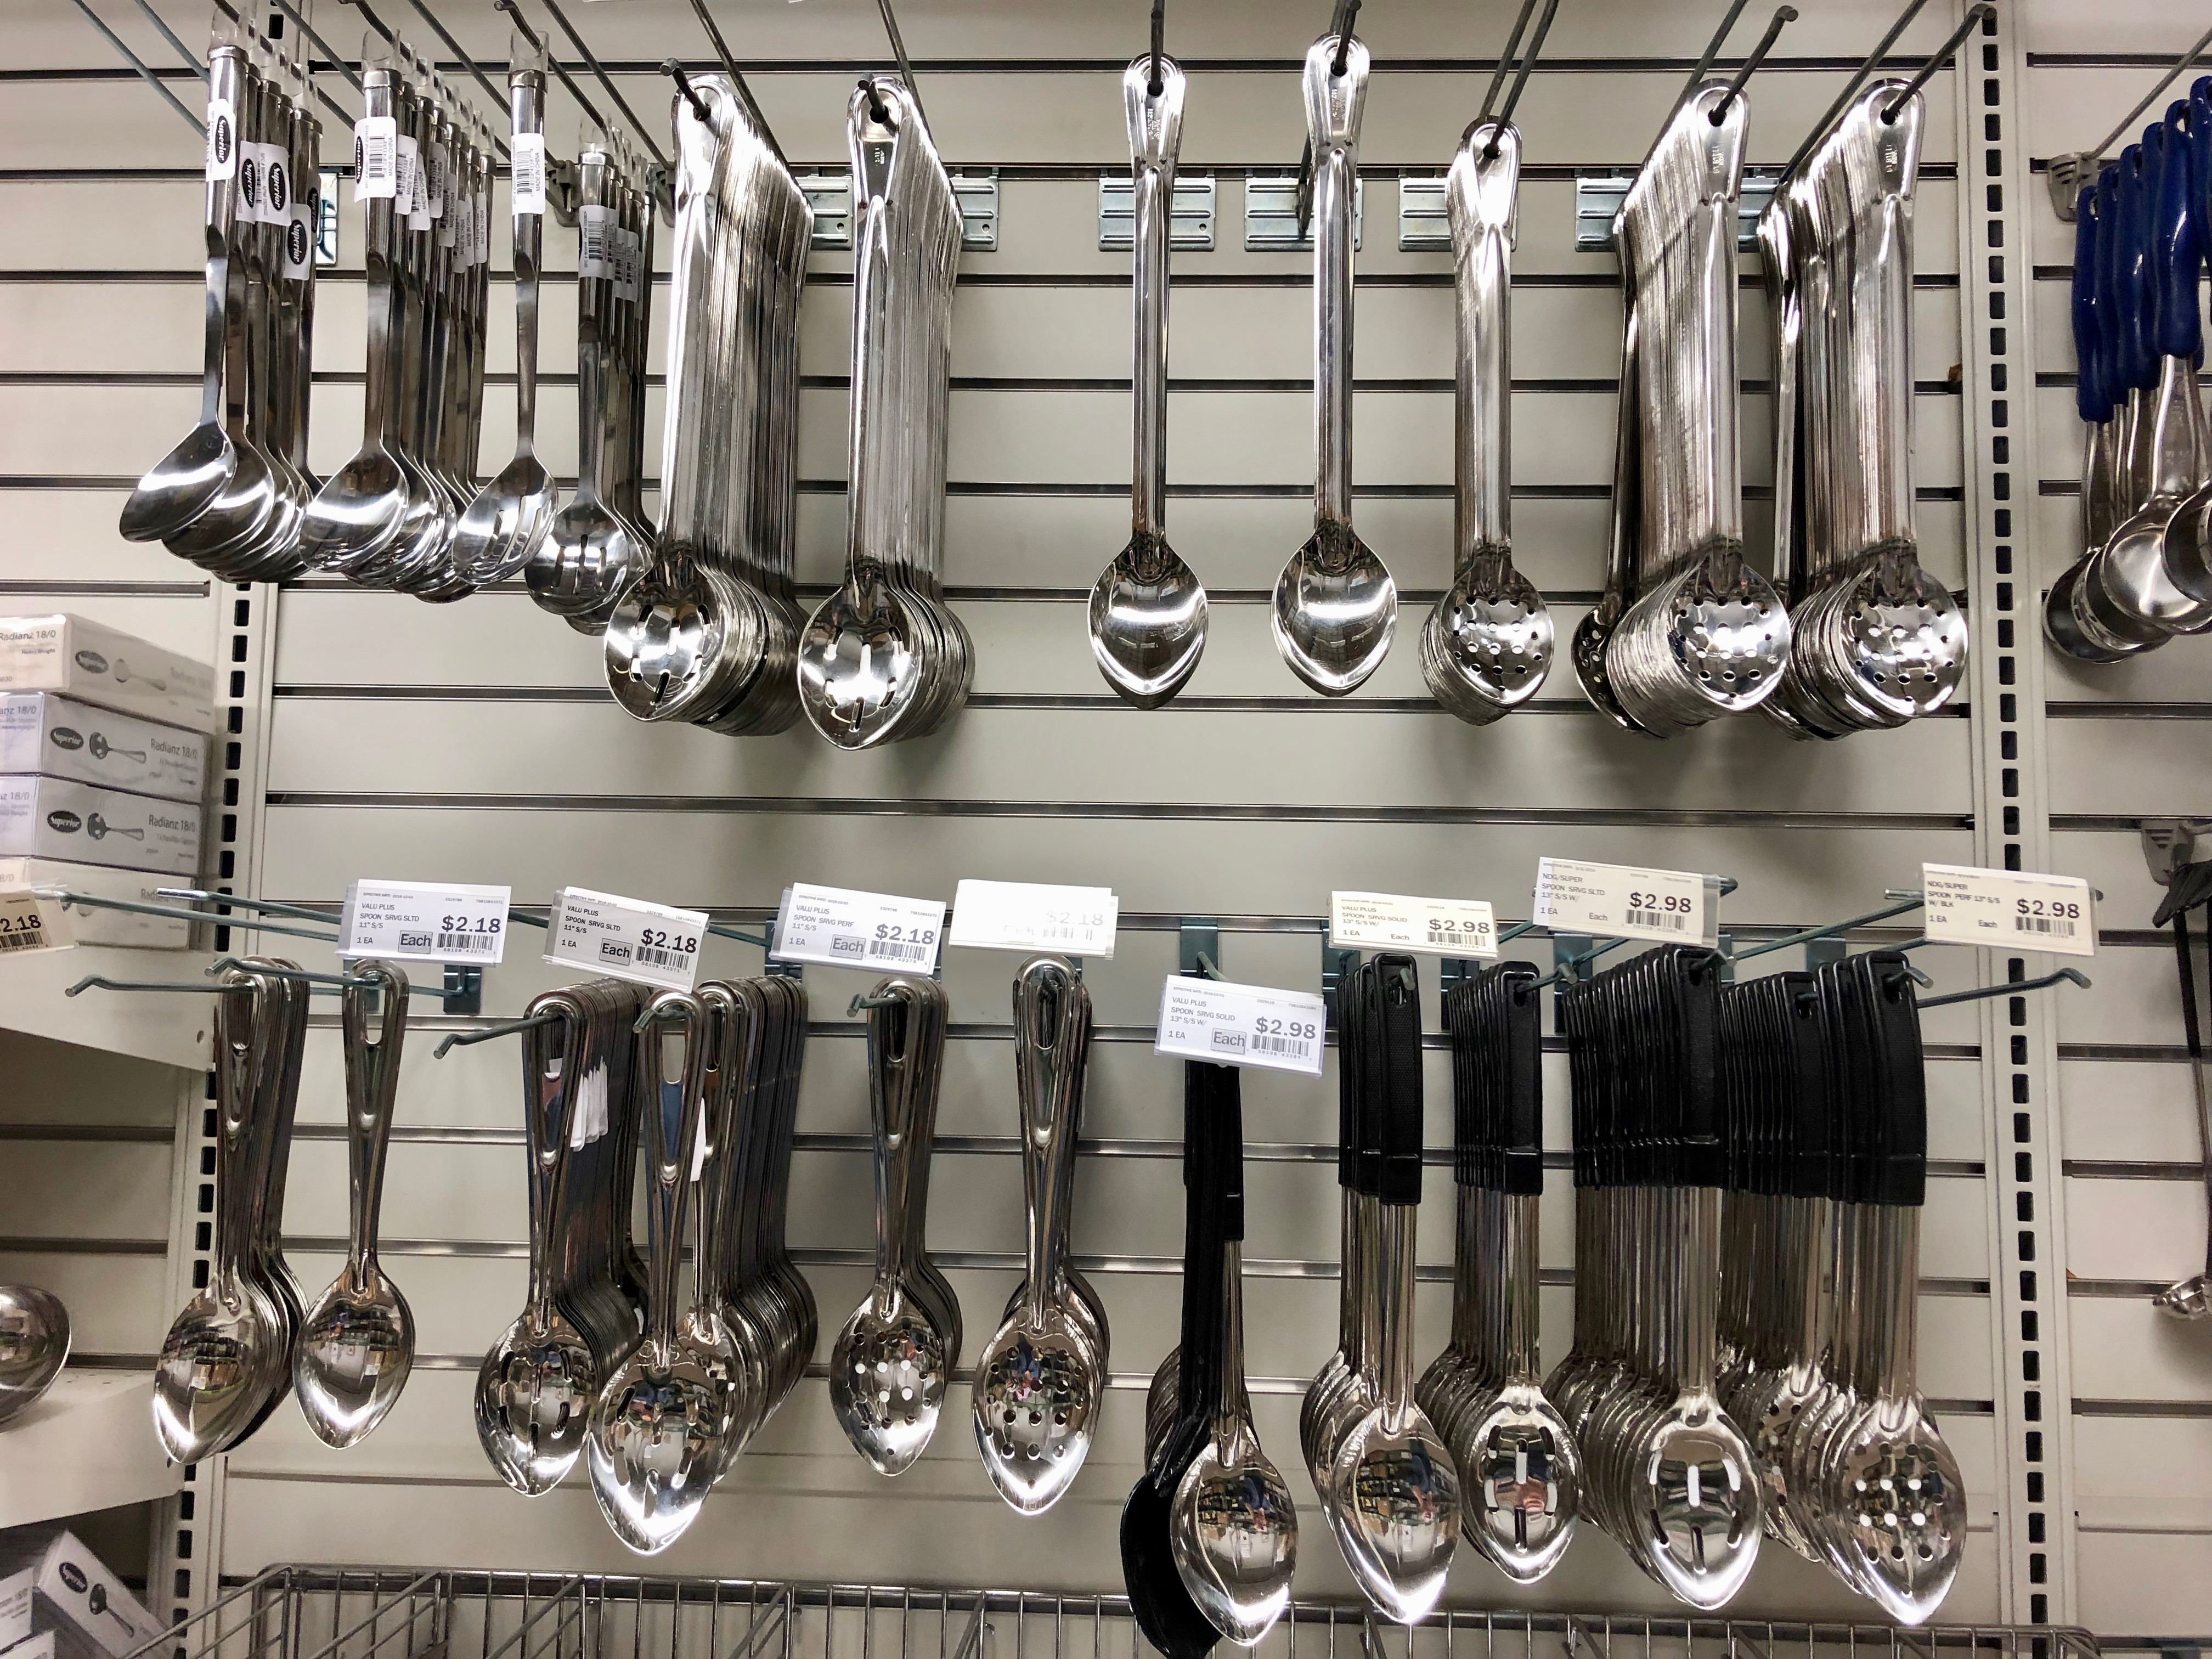 Kitchen Tools, Kitchen Supplies Store